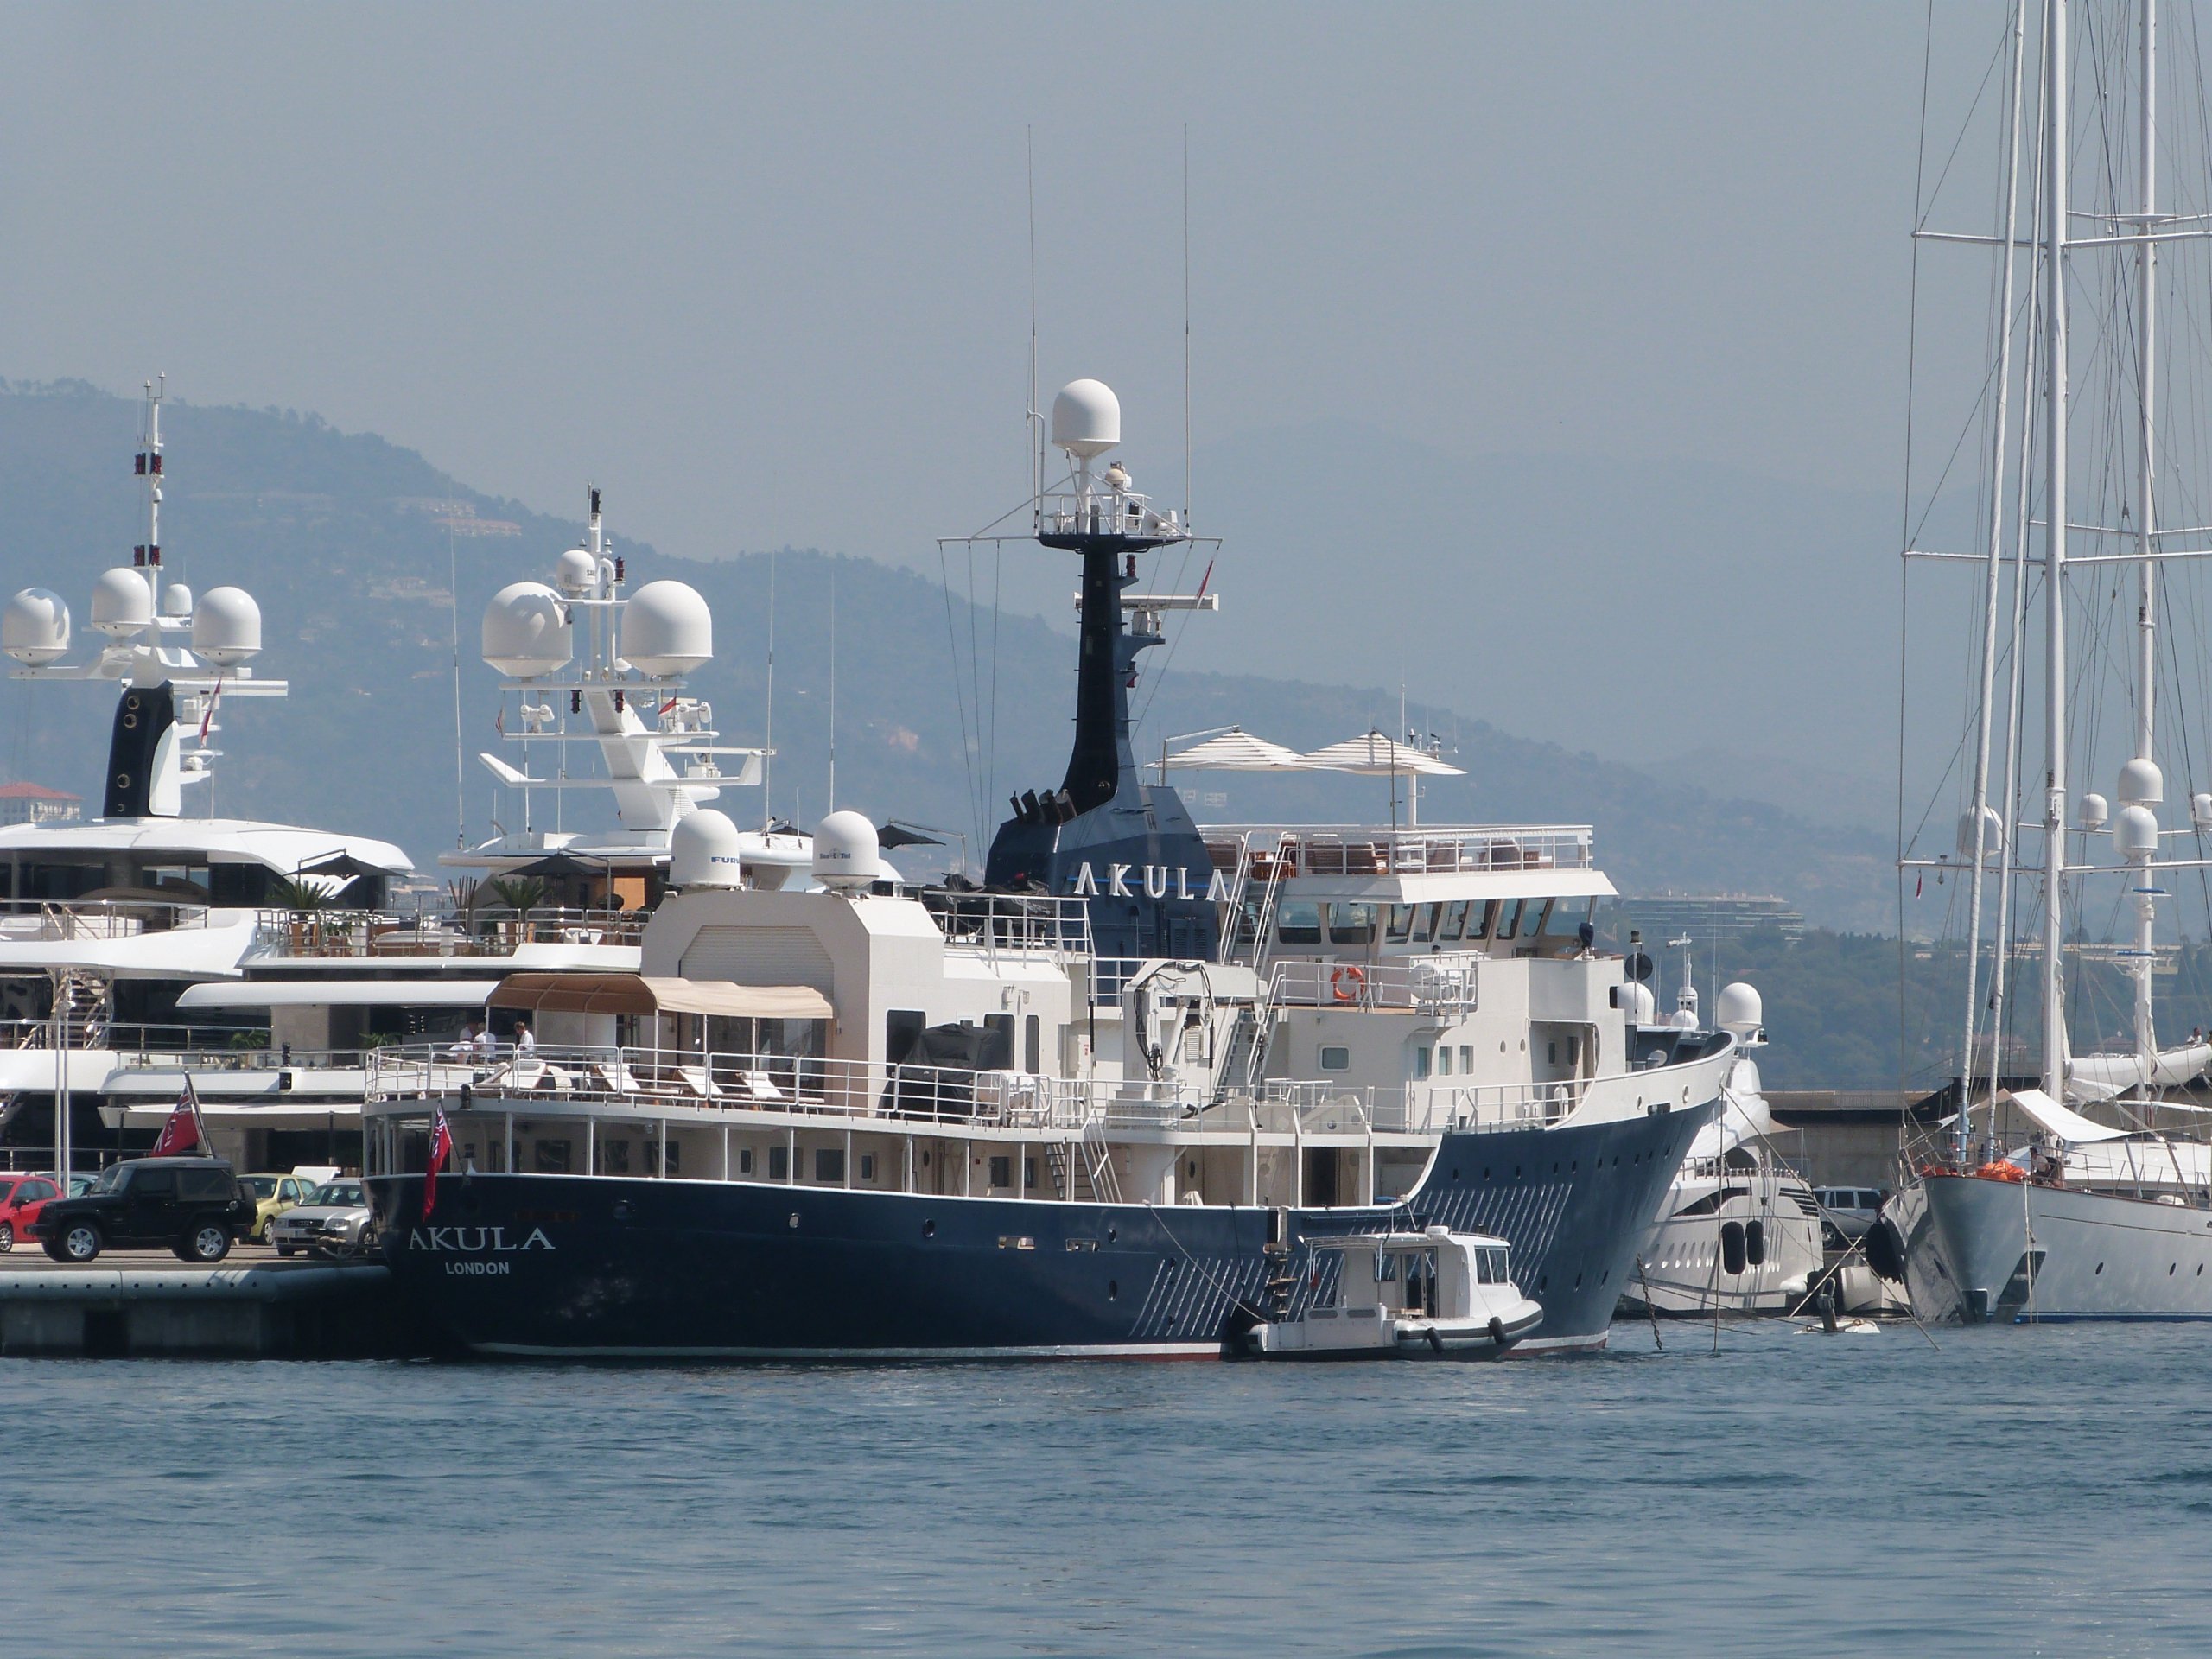 OMNIA Yacht • (ex Akula) • Amels • 2008 • Ex-proprietário Jonathan Faiman